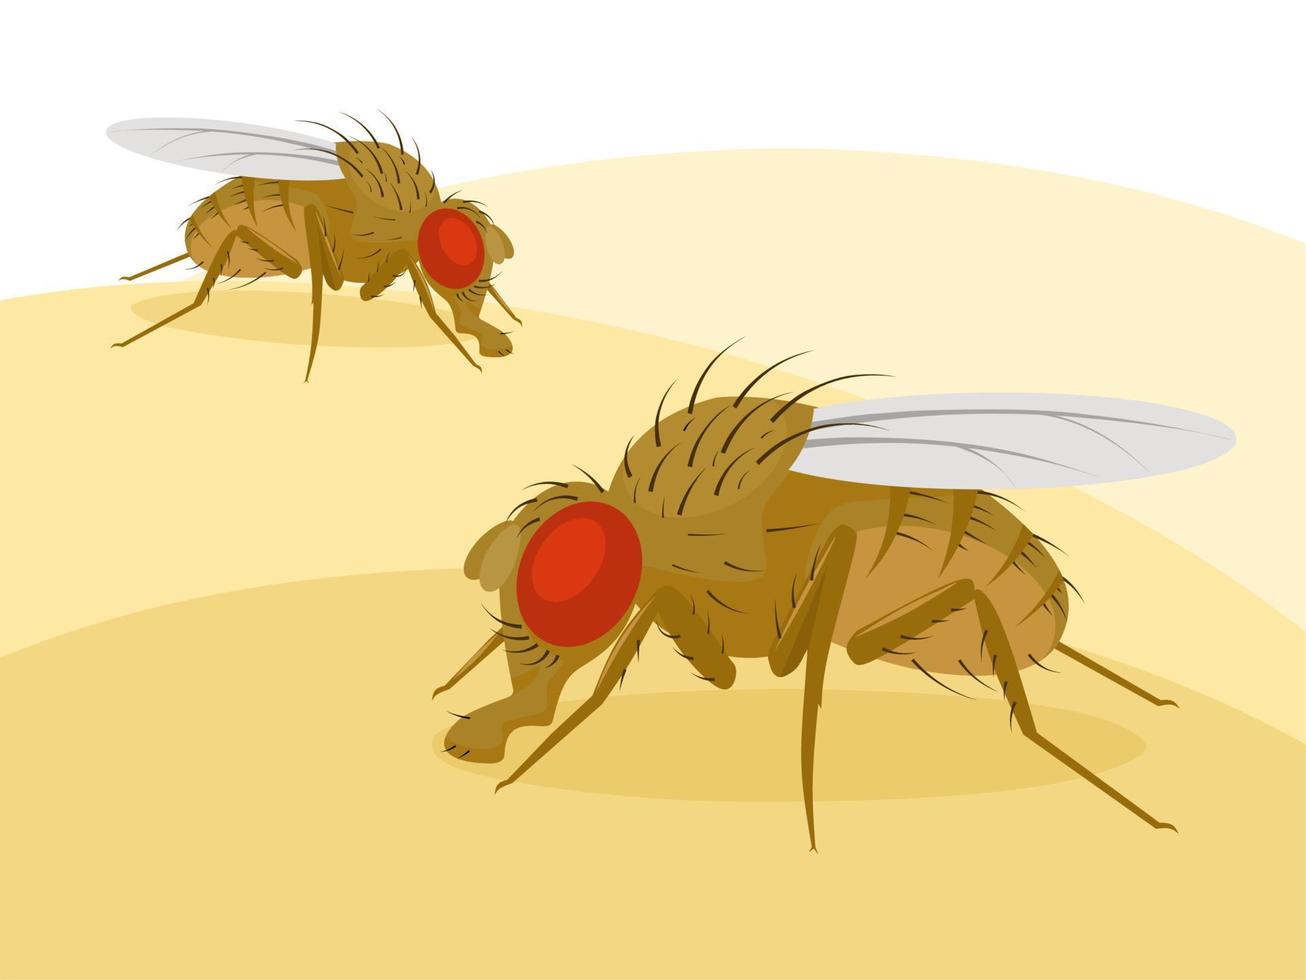 illustrazione vettoriale, mosca della frutta o mosca dell'aceto drosophila melanogaster vettore